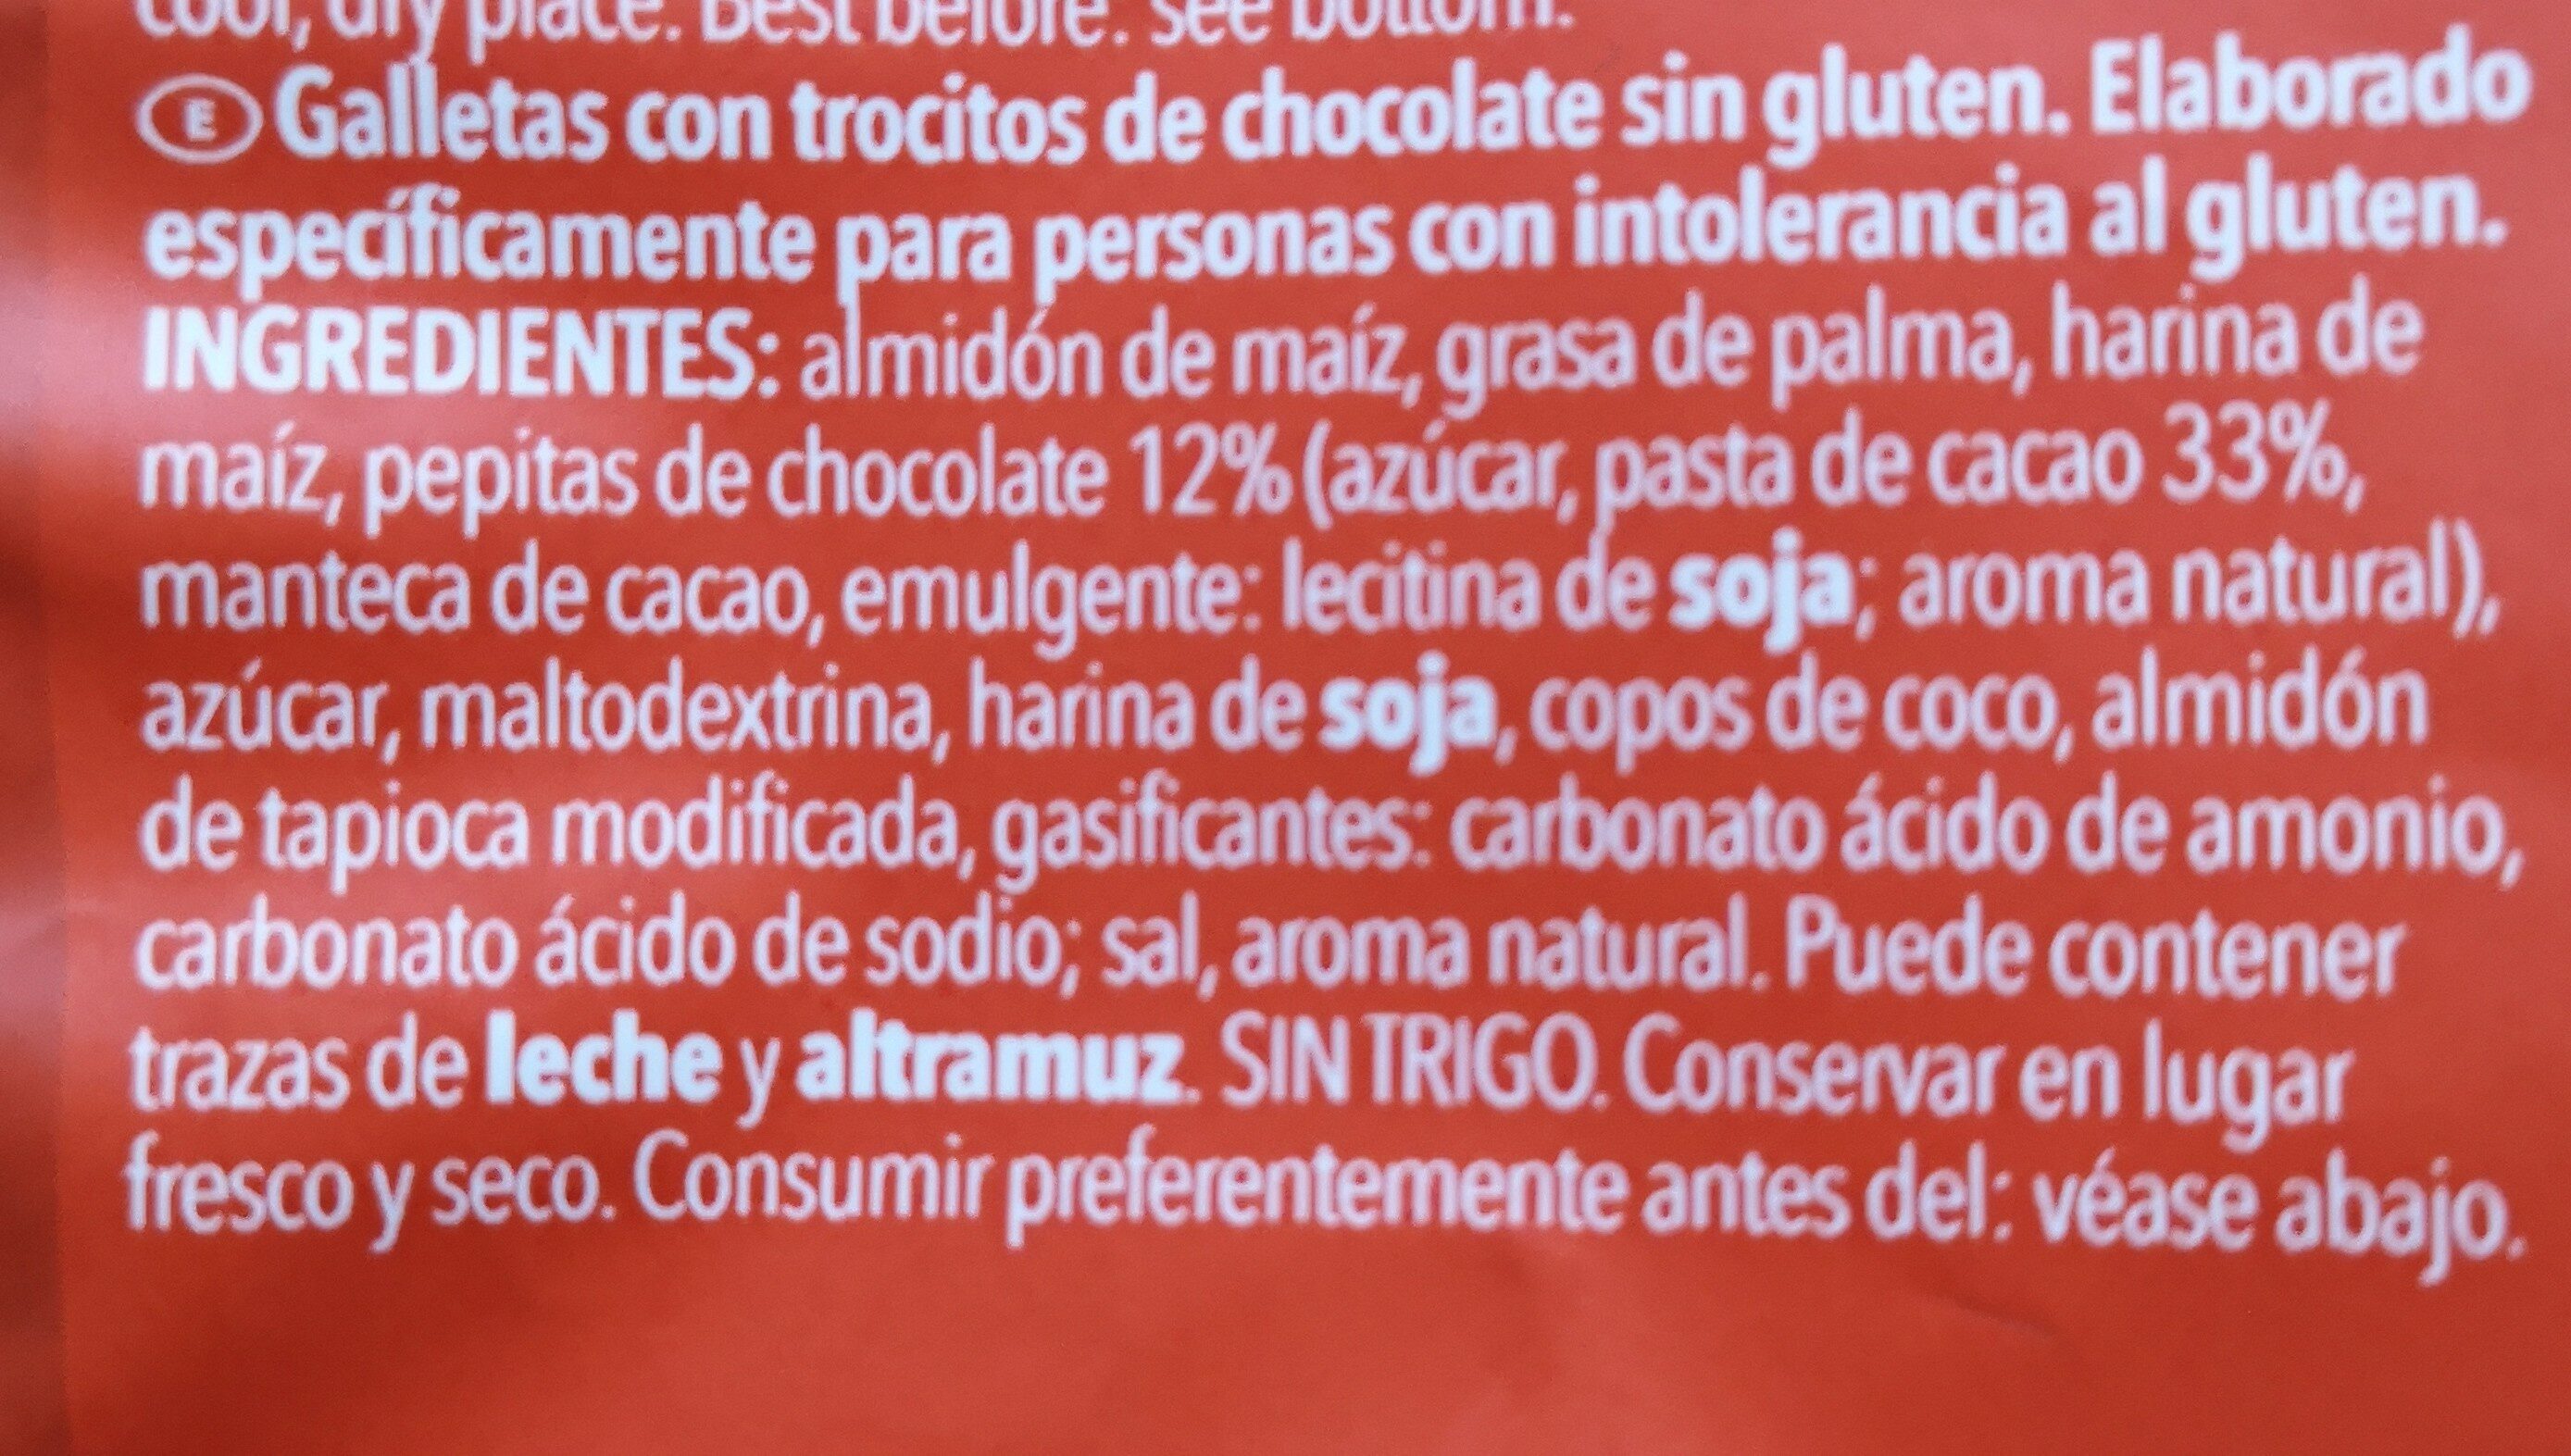 Choco chip cookies gluten free - Ingredients - en